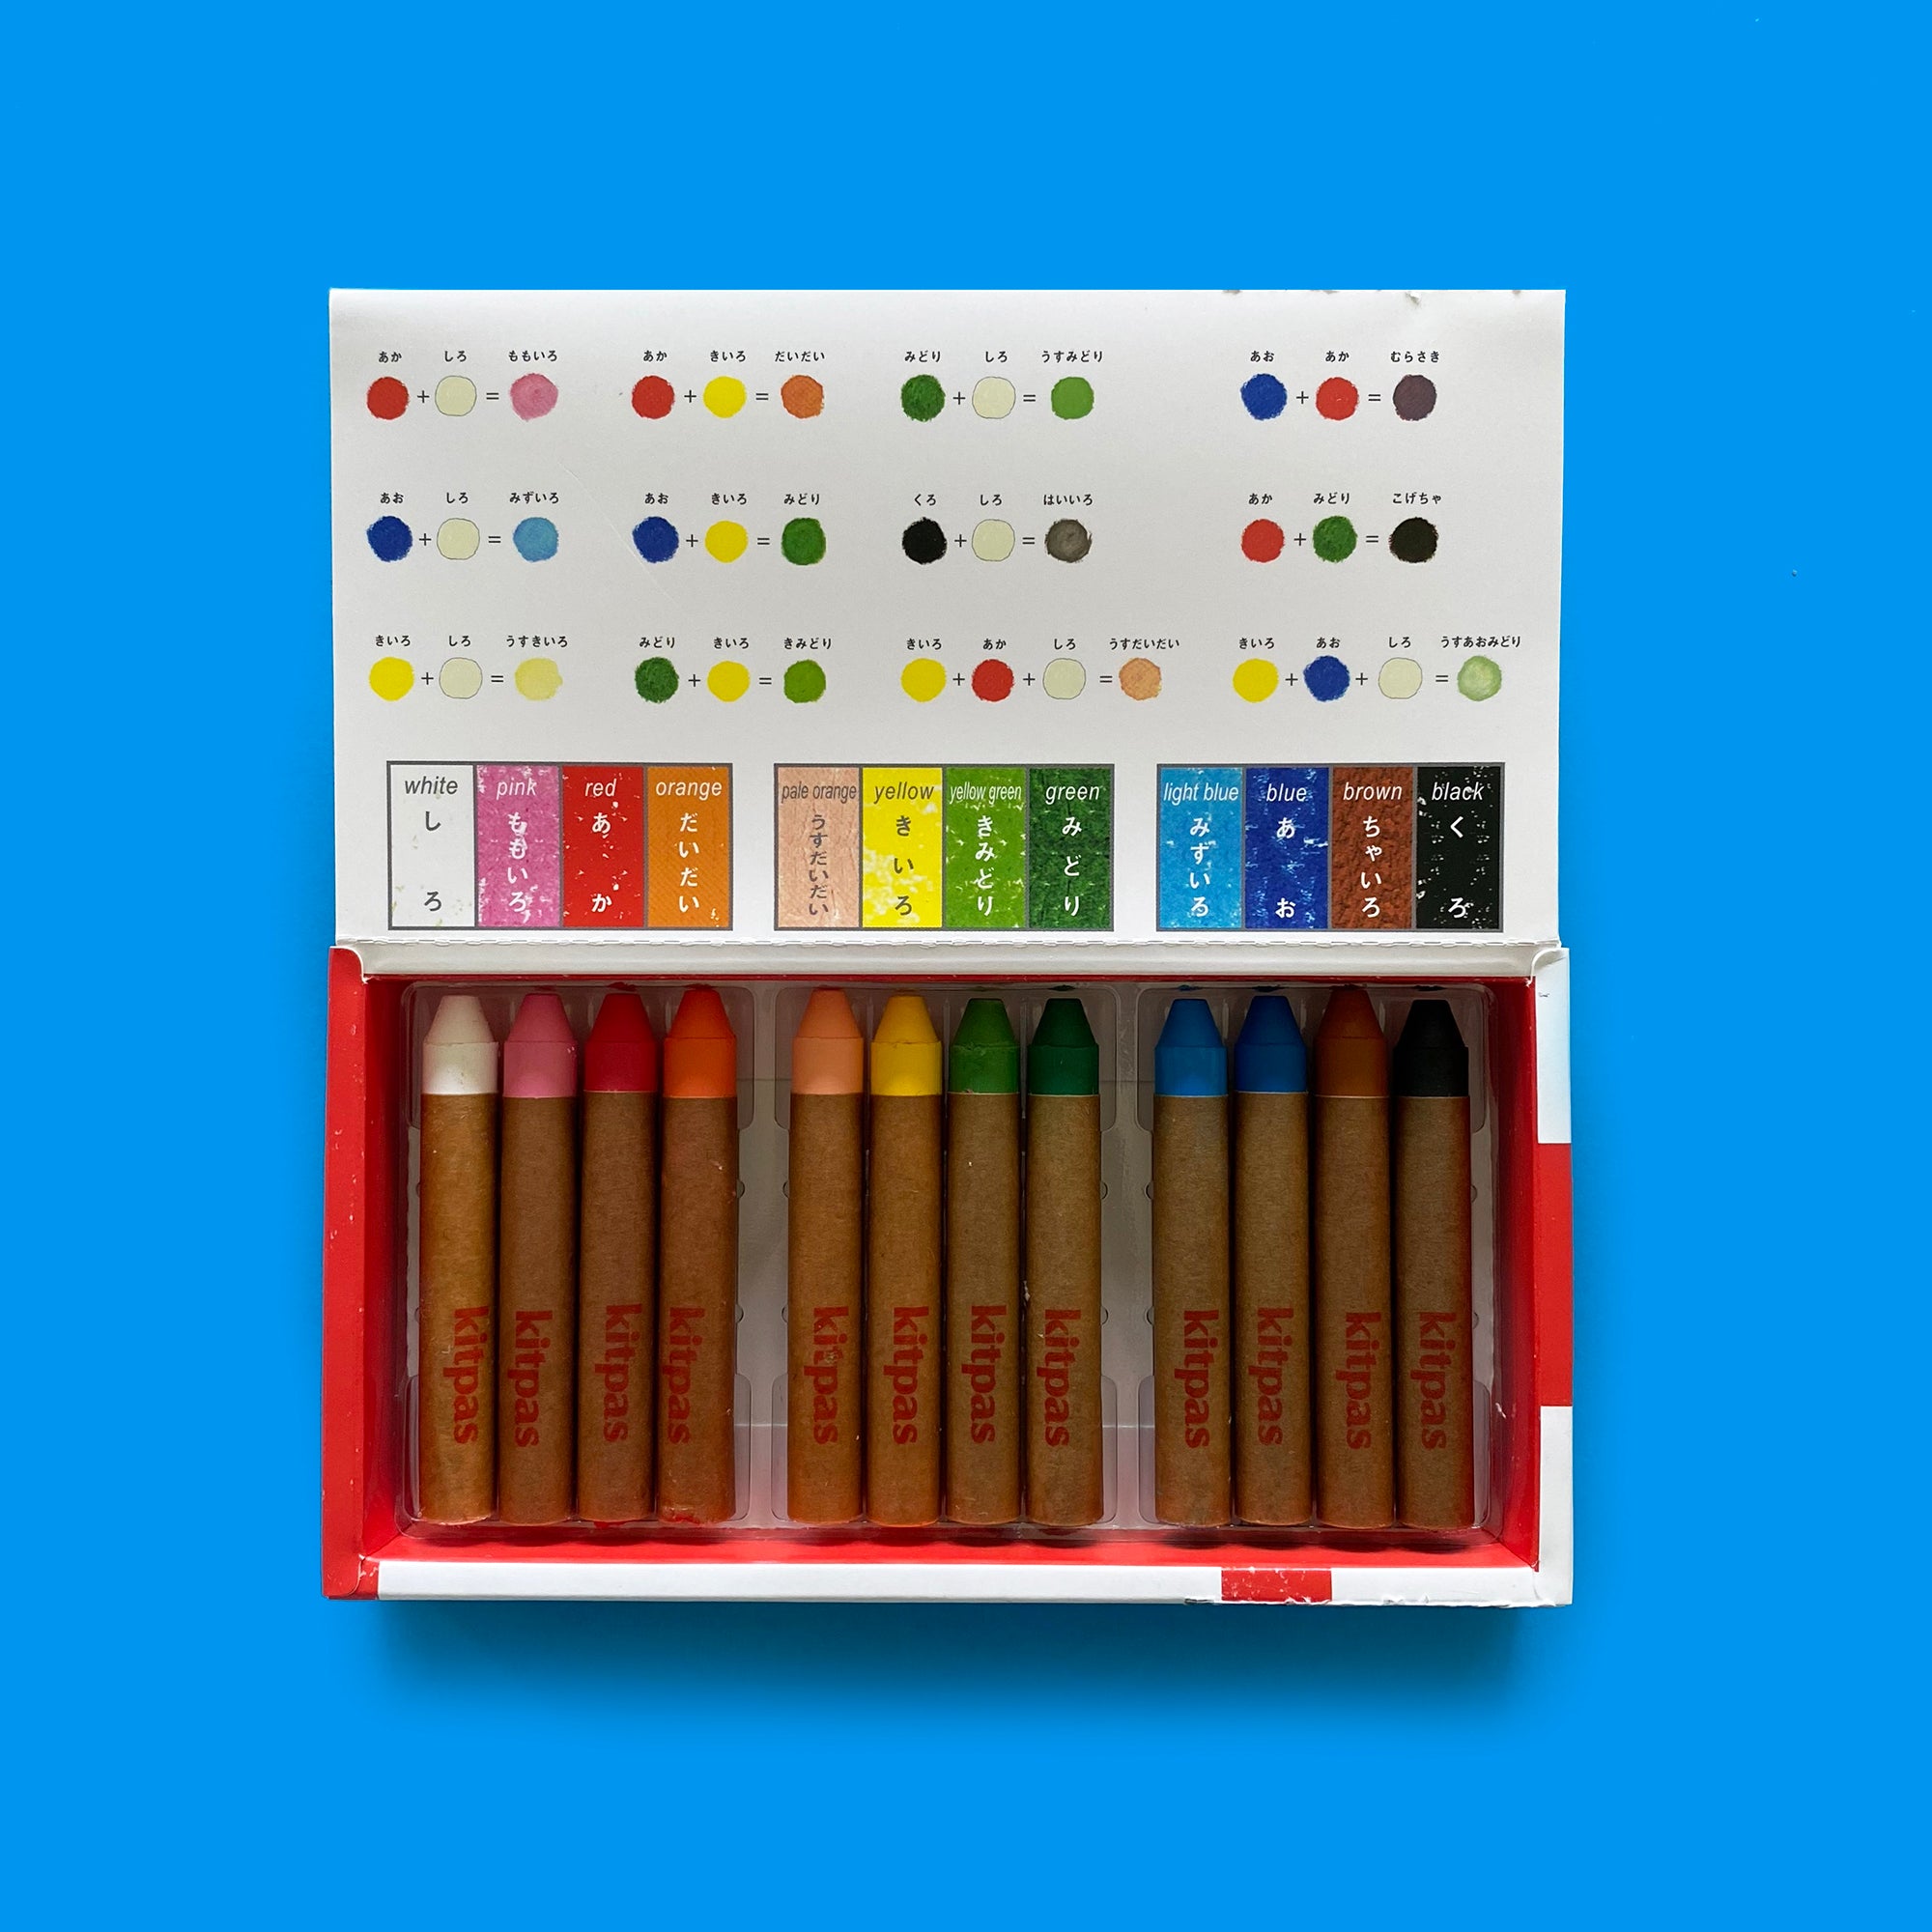 Kitpas Crayons - Set of 12